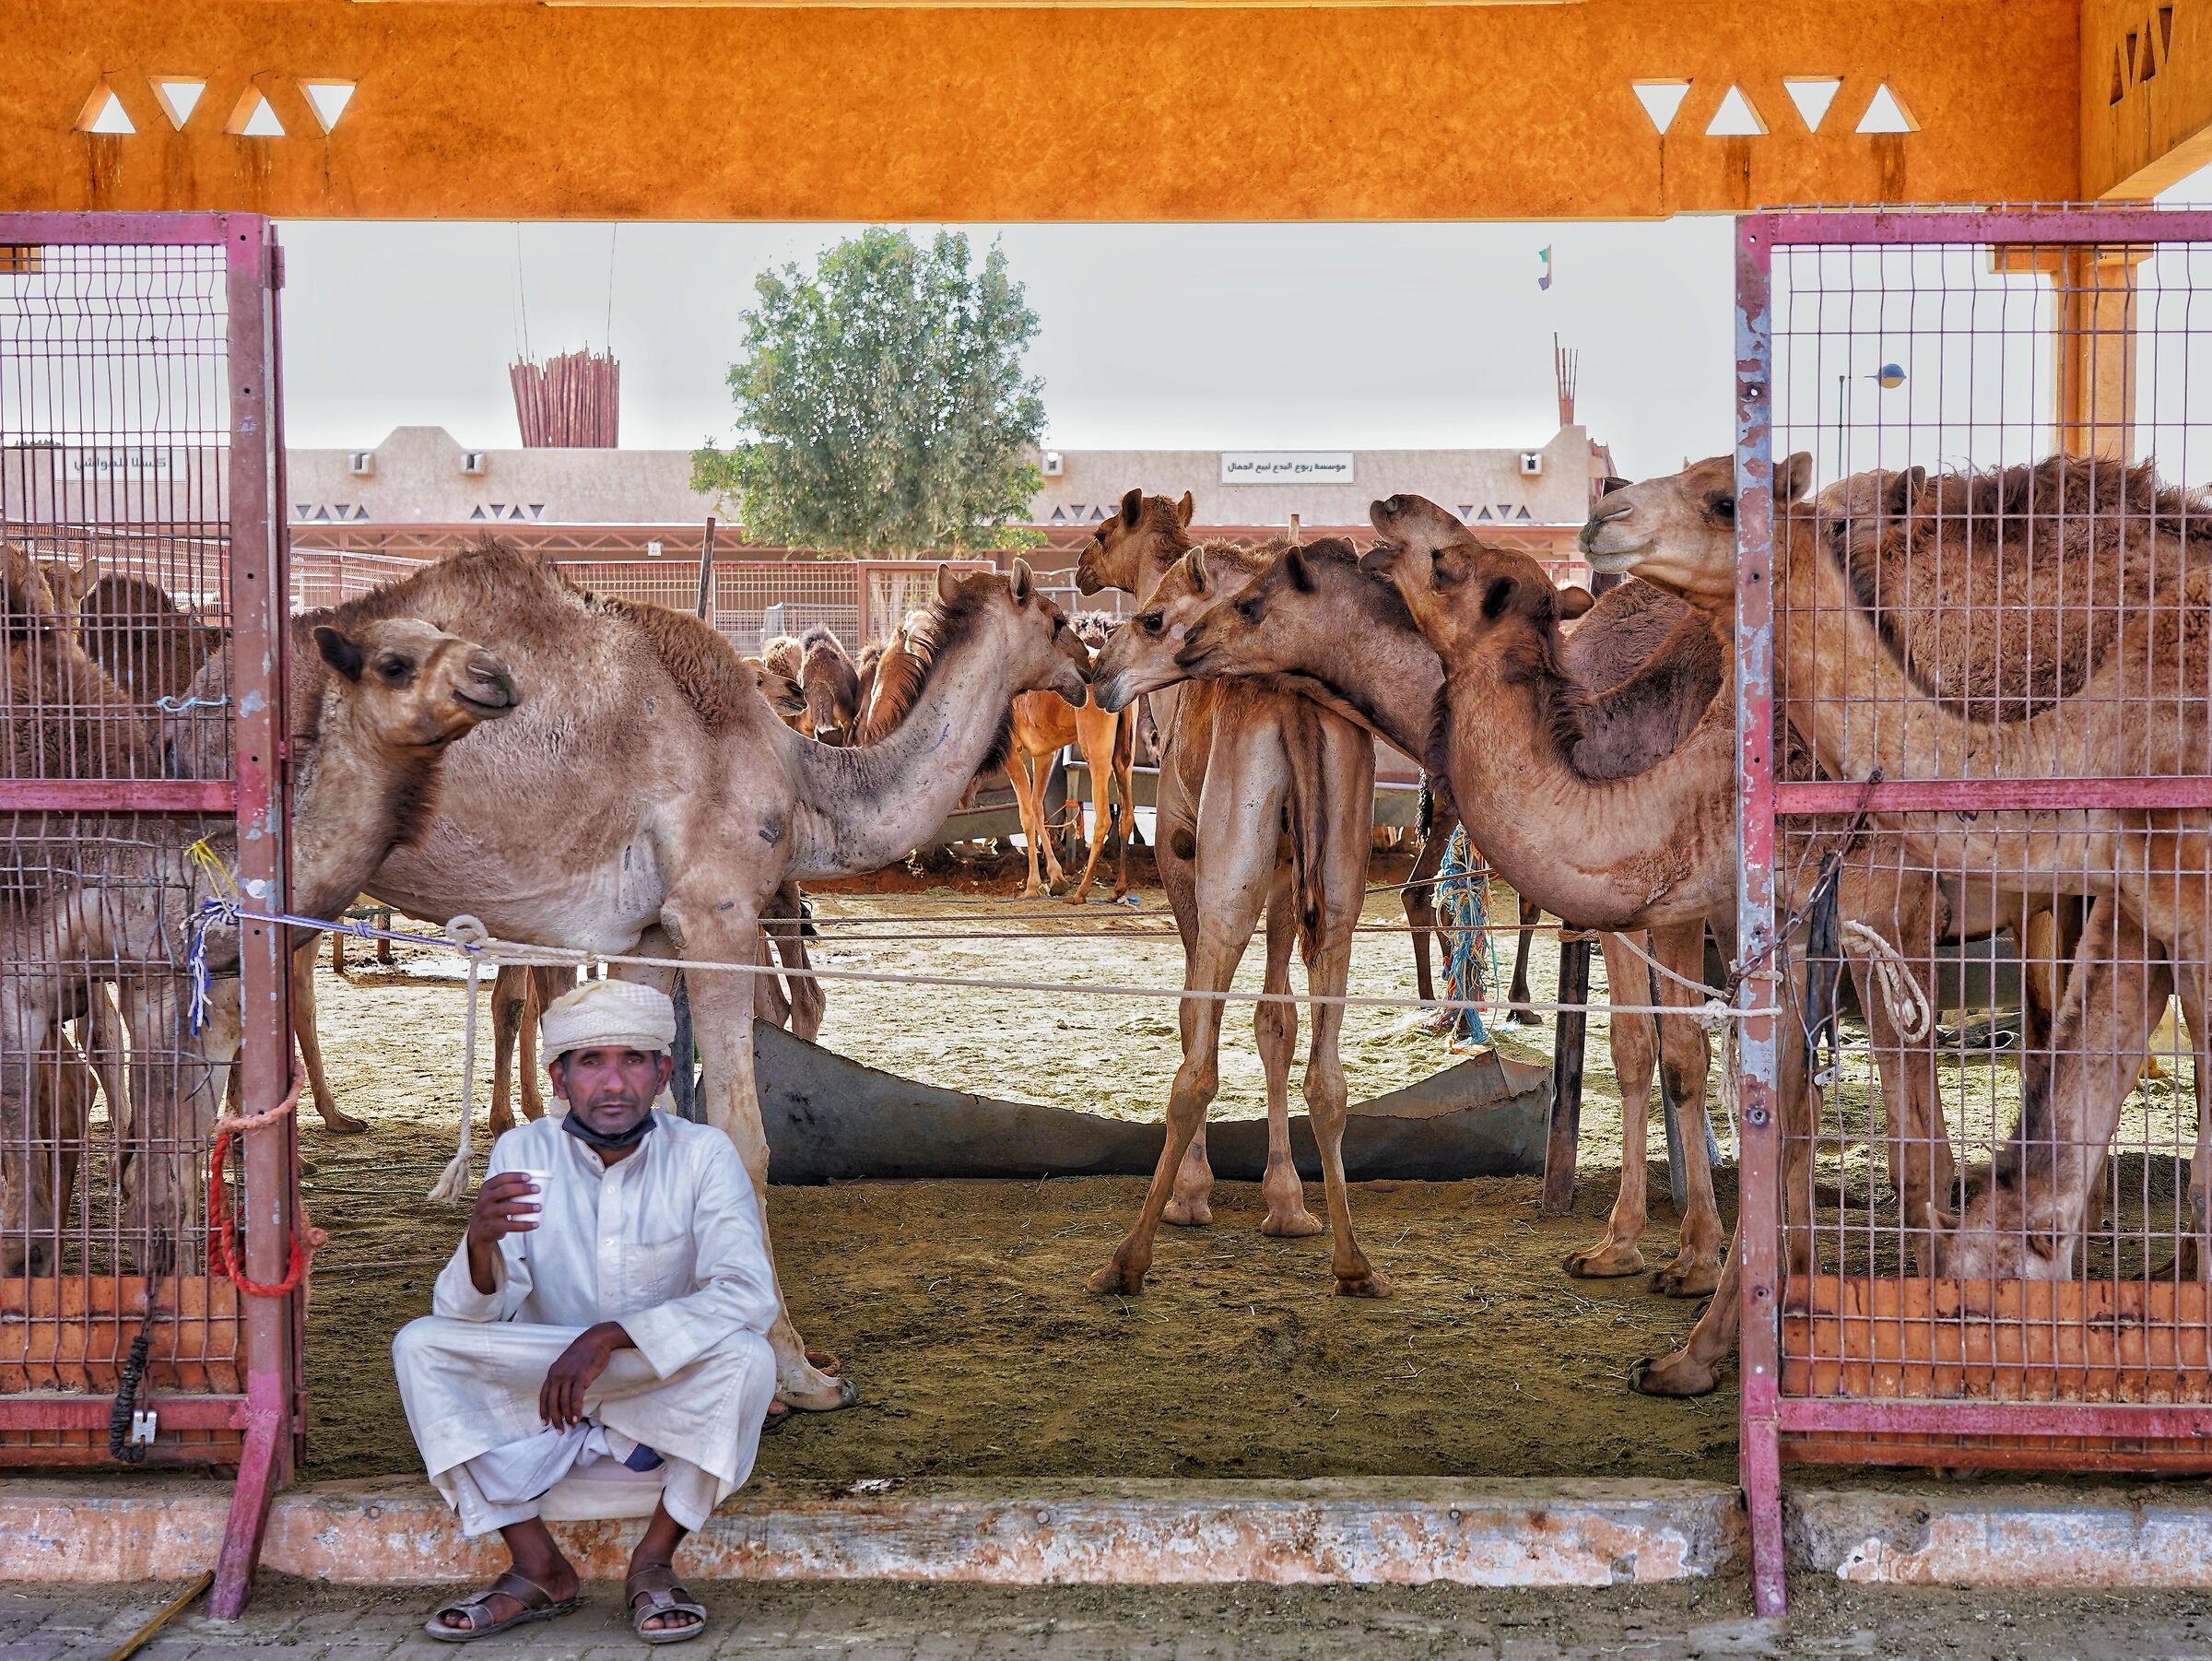 The camel seller...